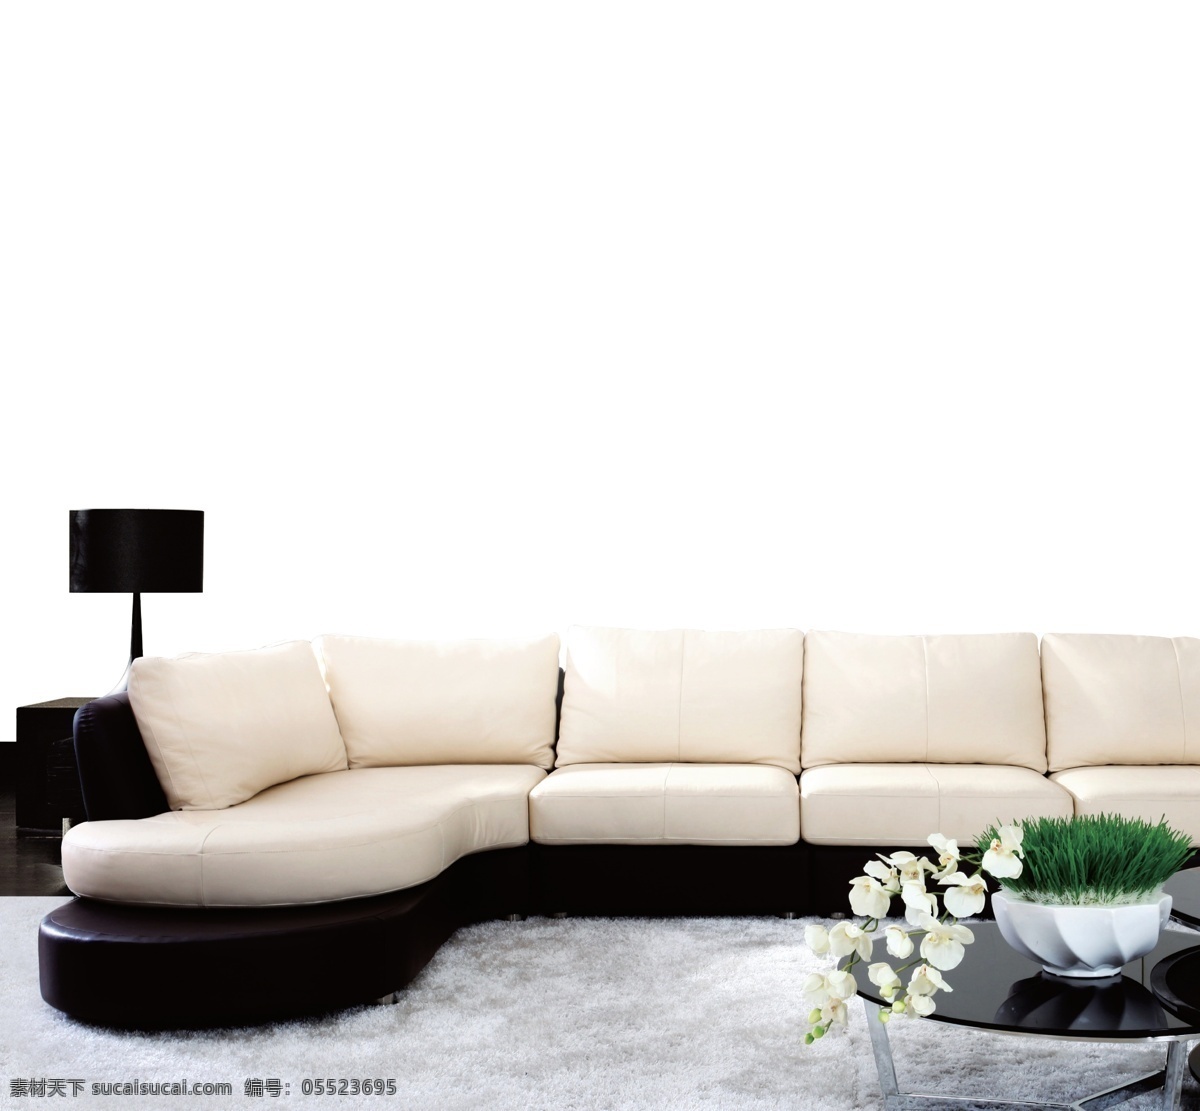 家居装饰 家居一角 沙发 现代沙发 墙壁 白色沙发 花 台灯 其他模版 广告设计模板 源文件